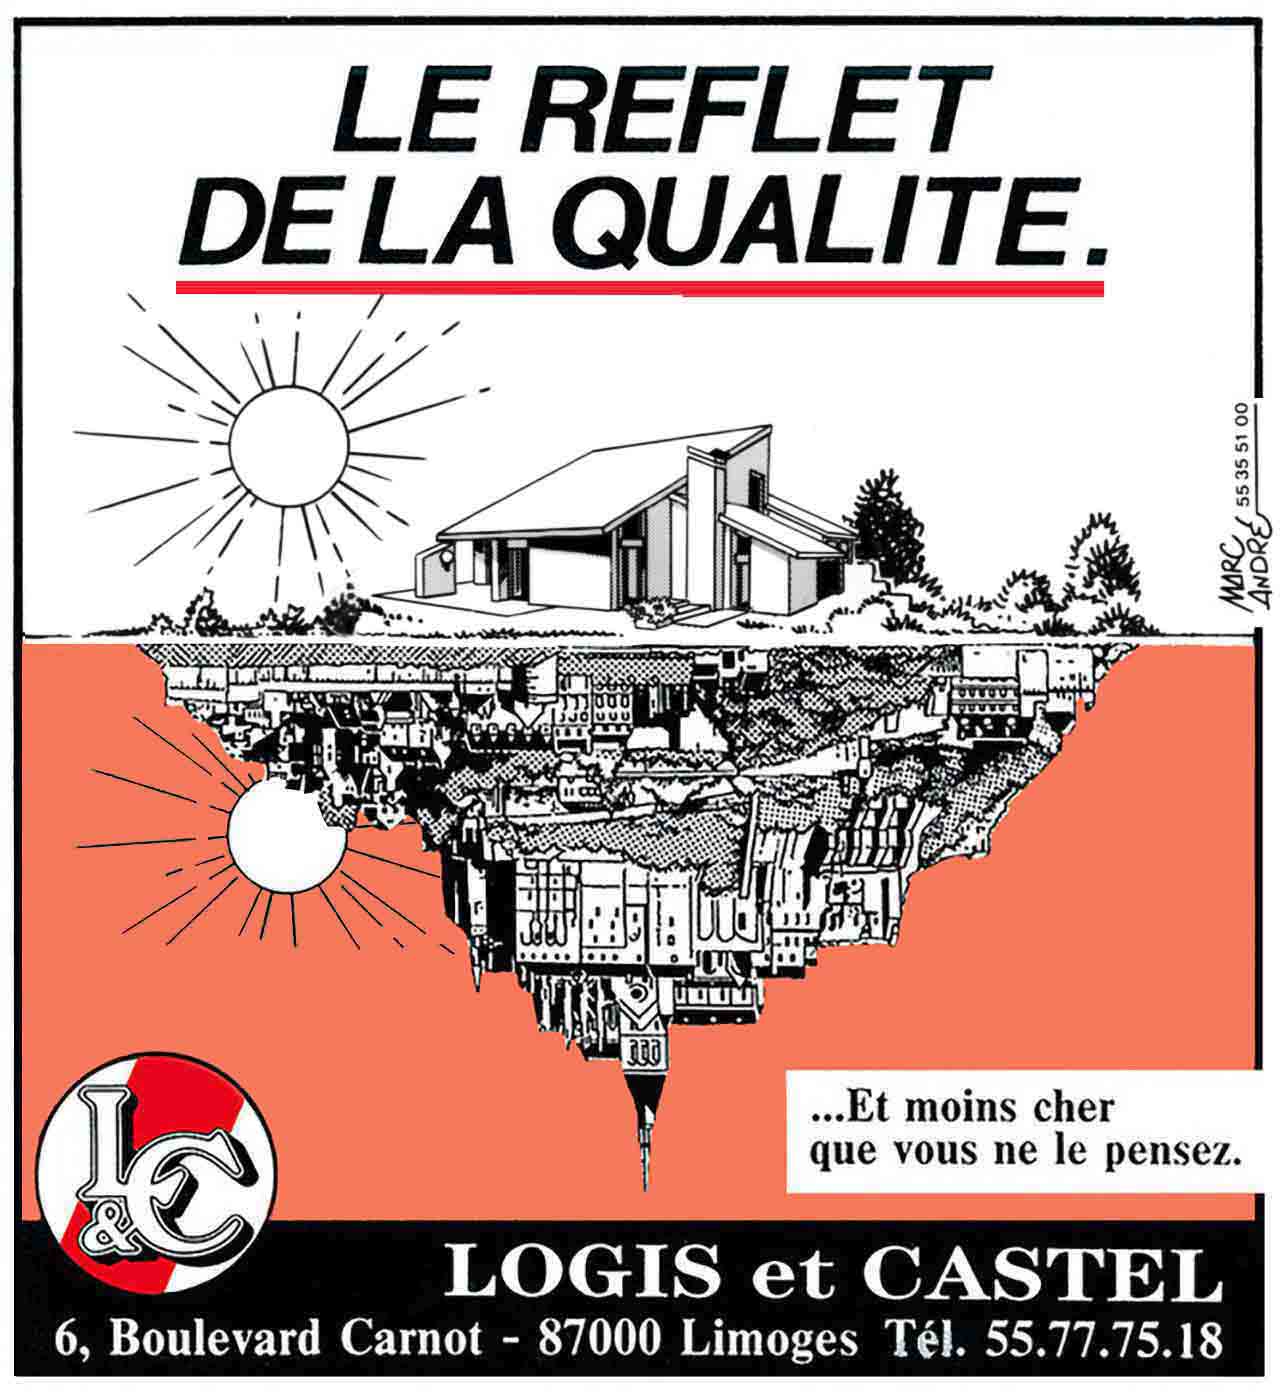 Annonce-presse Le reflet de la qualité 1989 Logis & Castel. Marc-André BD Illustration Graphisme Limoges